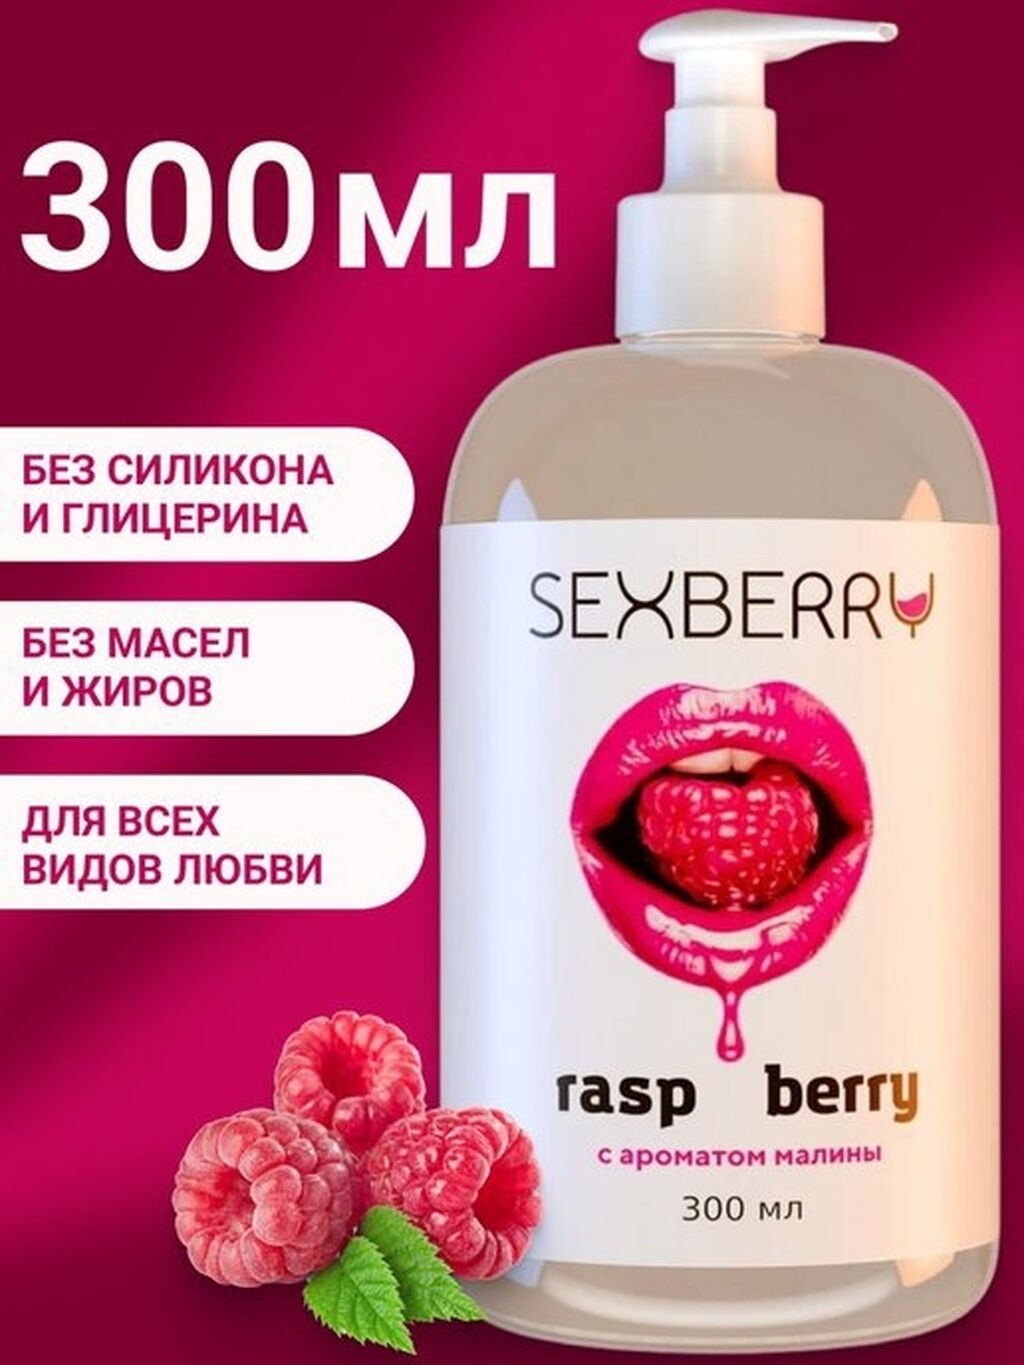 Товары для взрослых: Натуральный интим лубрикант Sexberry с ароматом малины - это интимный